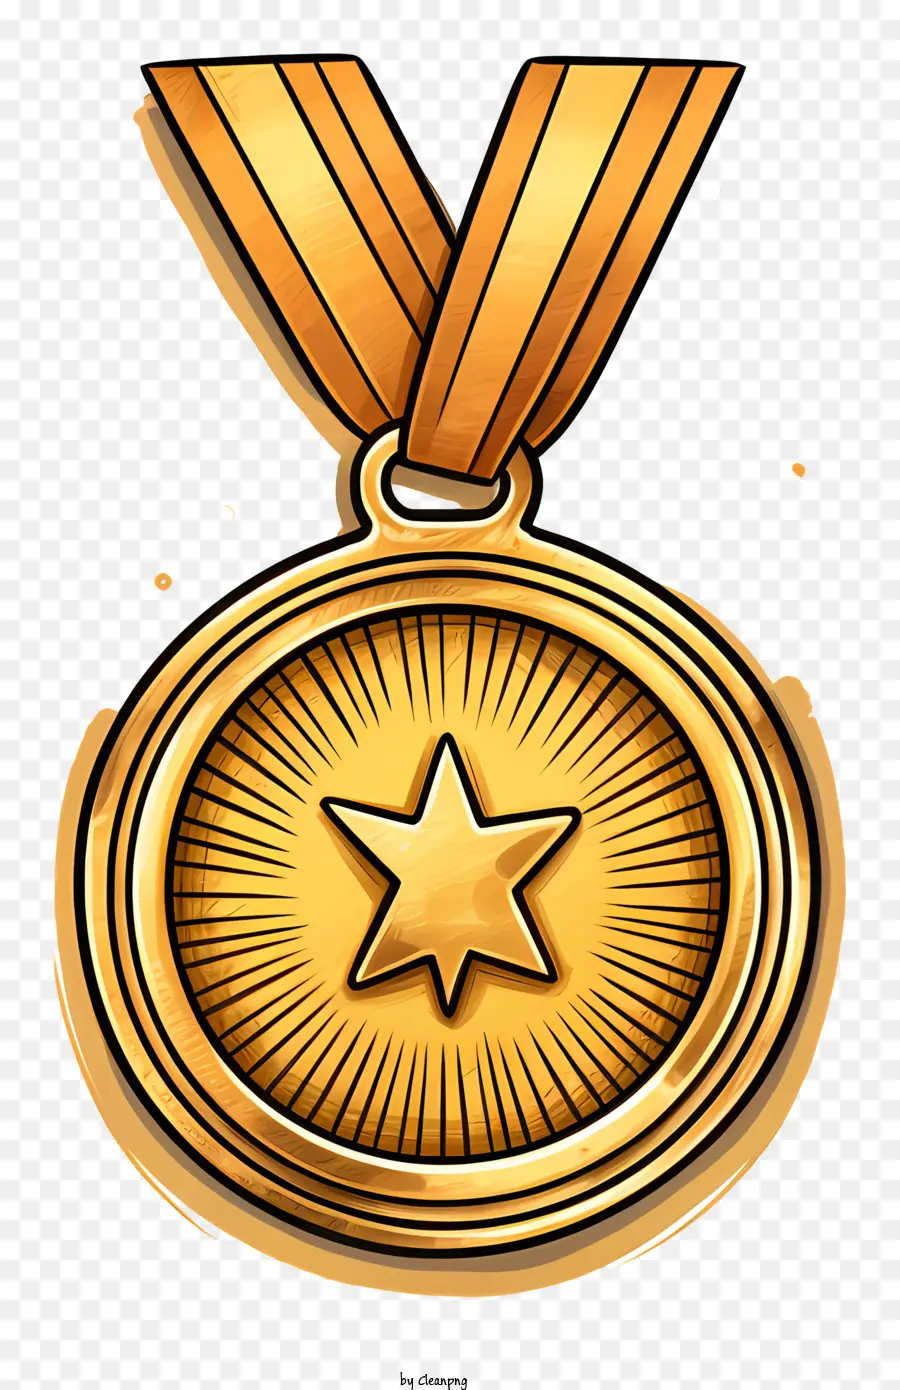 la stella d'argento - Medaglia d'oro lucida con design di stelle d'argento